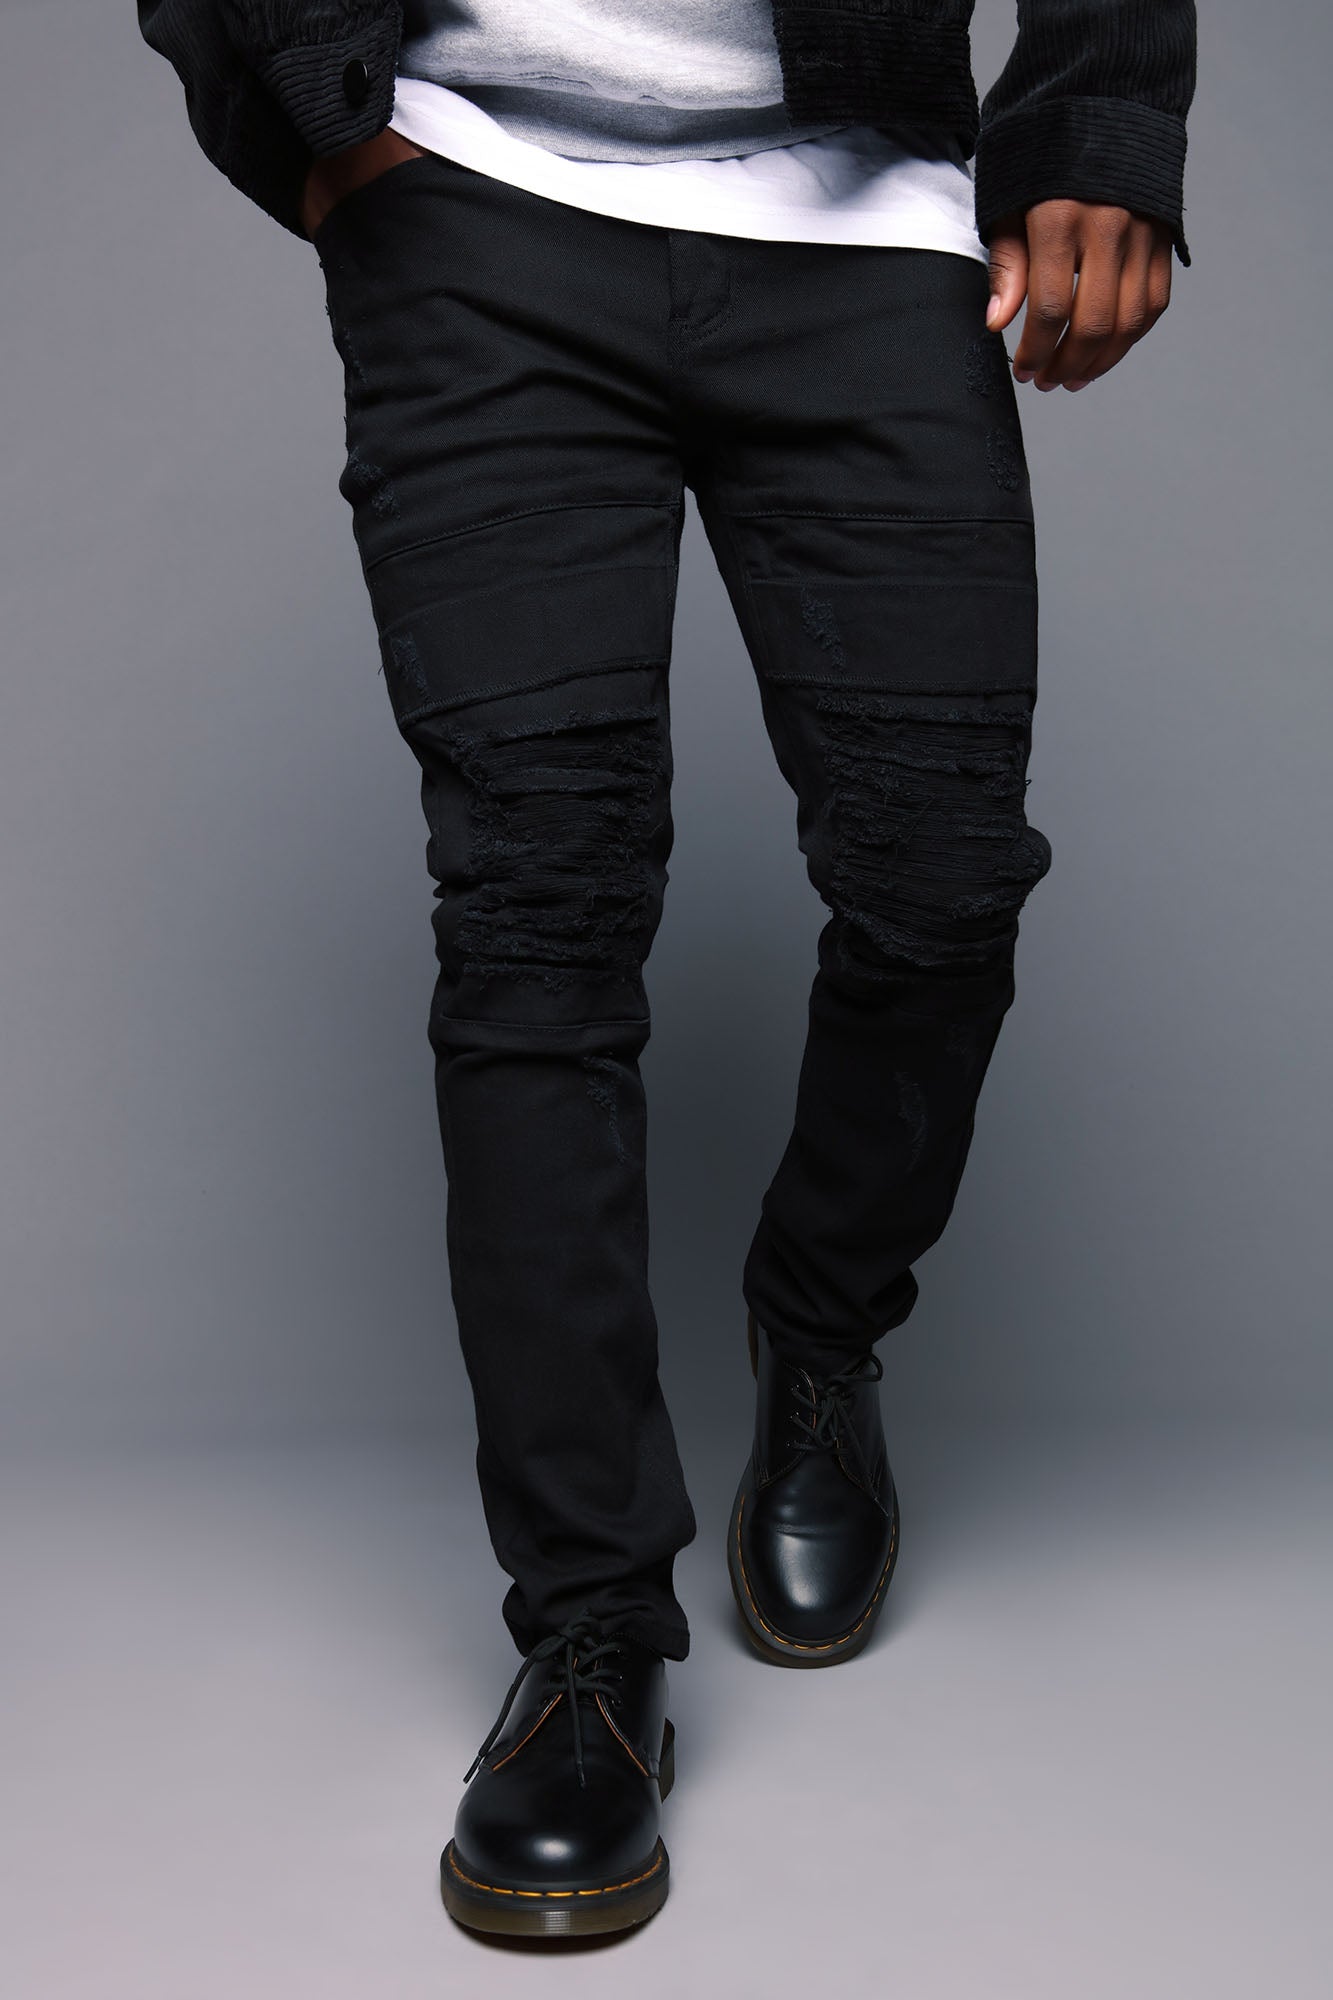 Men's Reel It in Skinny Jean in Black Size 34 by Fashion Nova | Fashion Nova